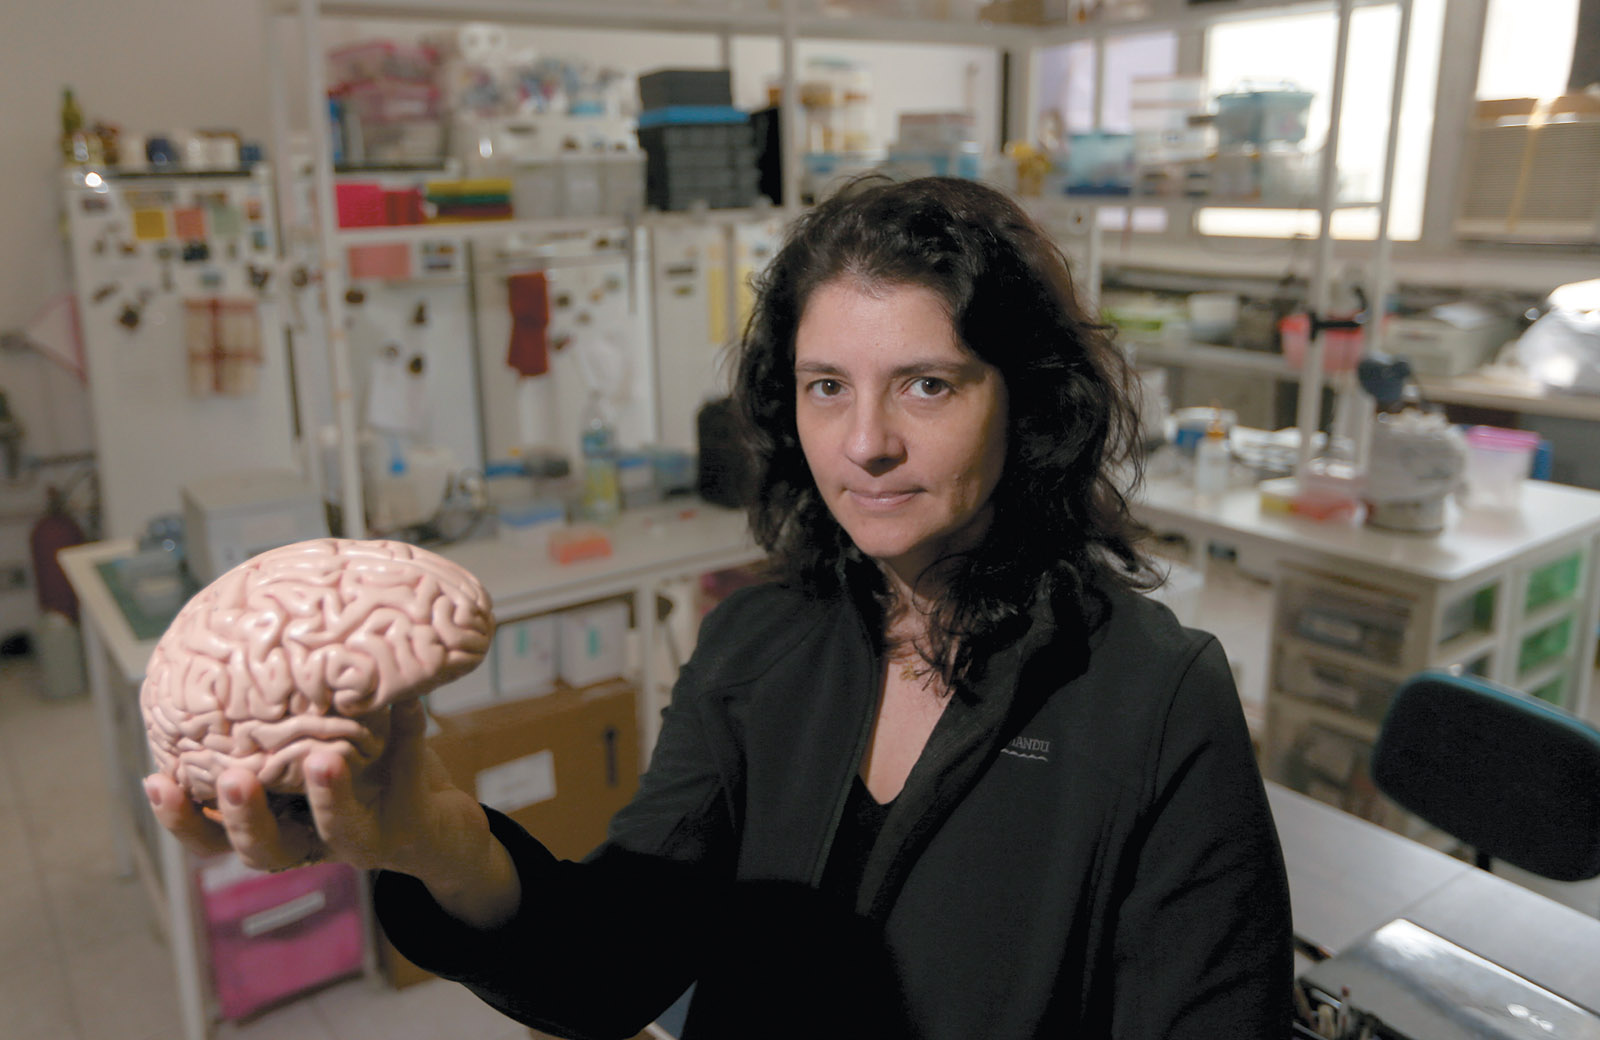 Suzana Herculano-Houzel, head of the Laboratory of Comparative Neuroanatomy at the Federal University of Rio de Janeiro, August 2015